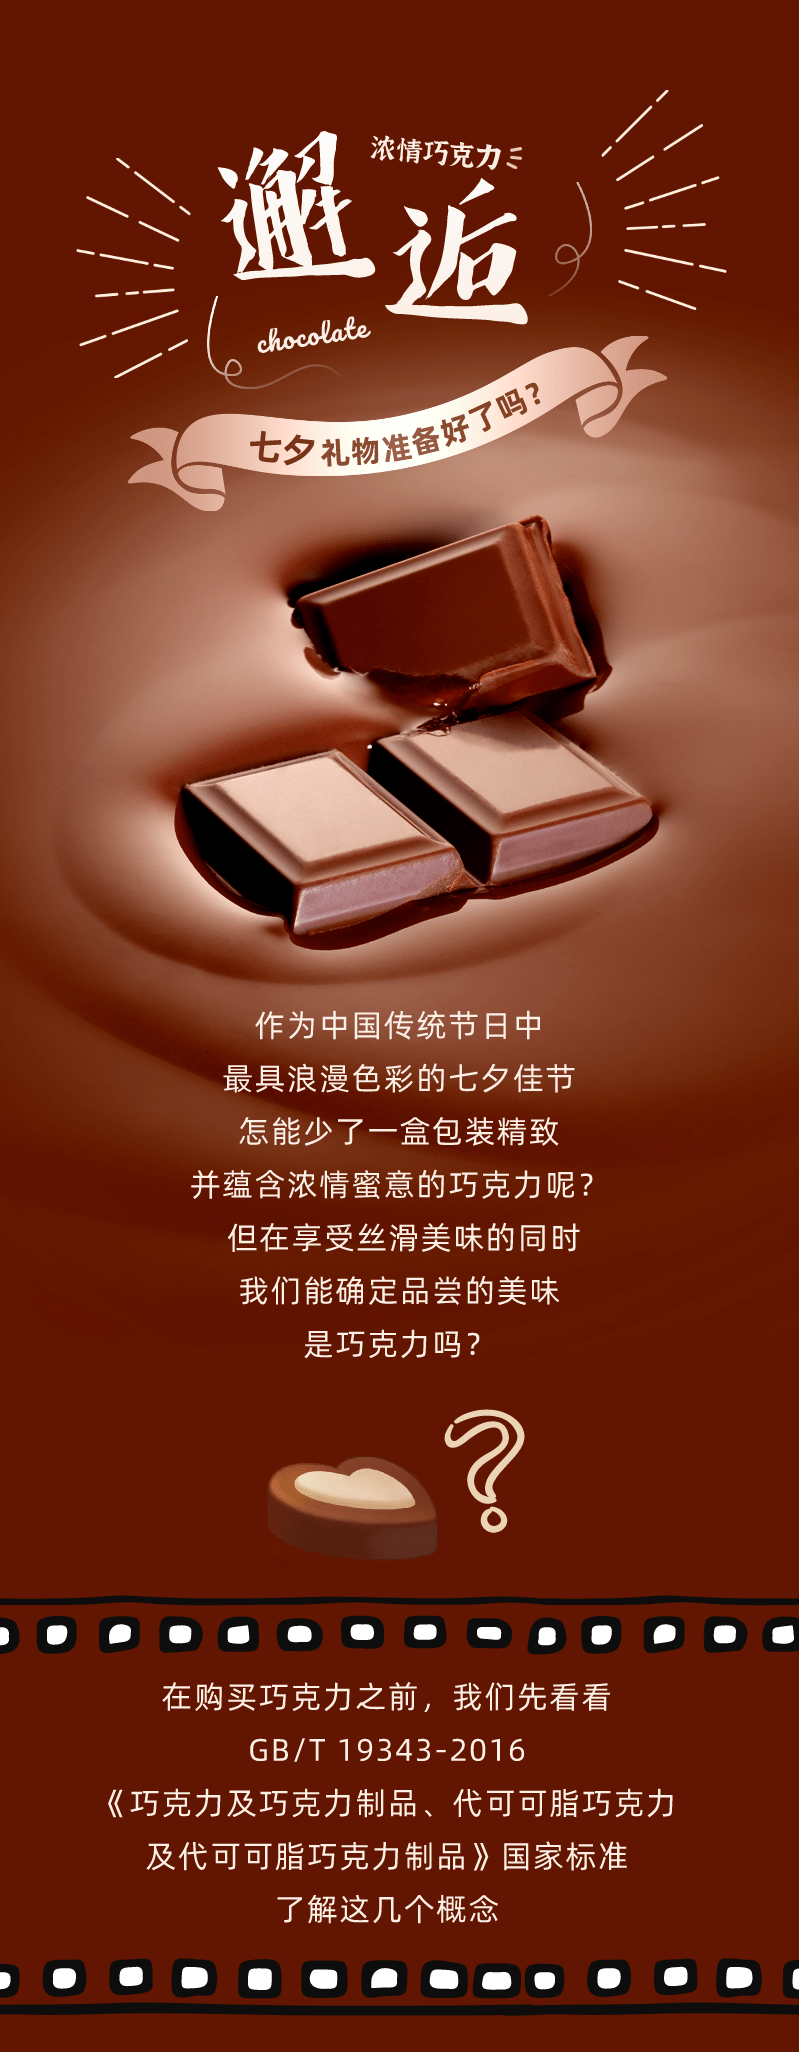 为什么在七夕吃巧克力会有爱情的味道?